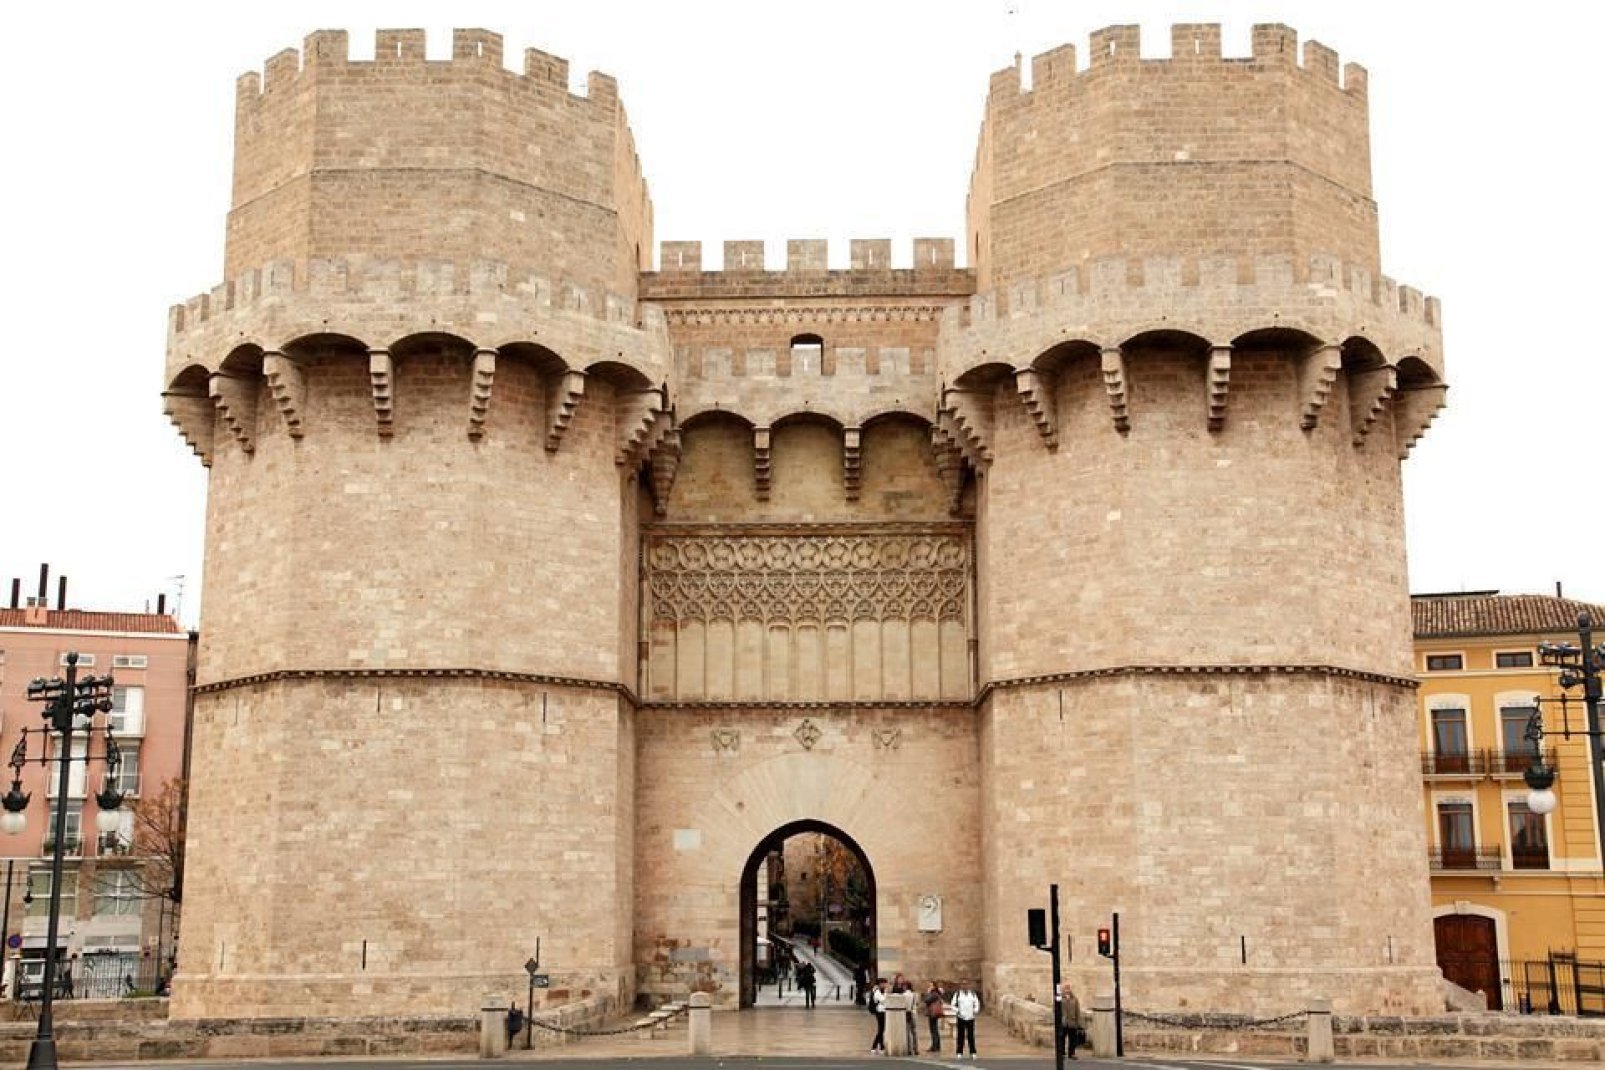 Una delle due porte superstiti della muraglia originale, insieme alla Torres de Serranos.